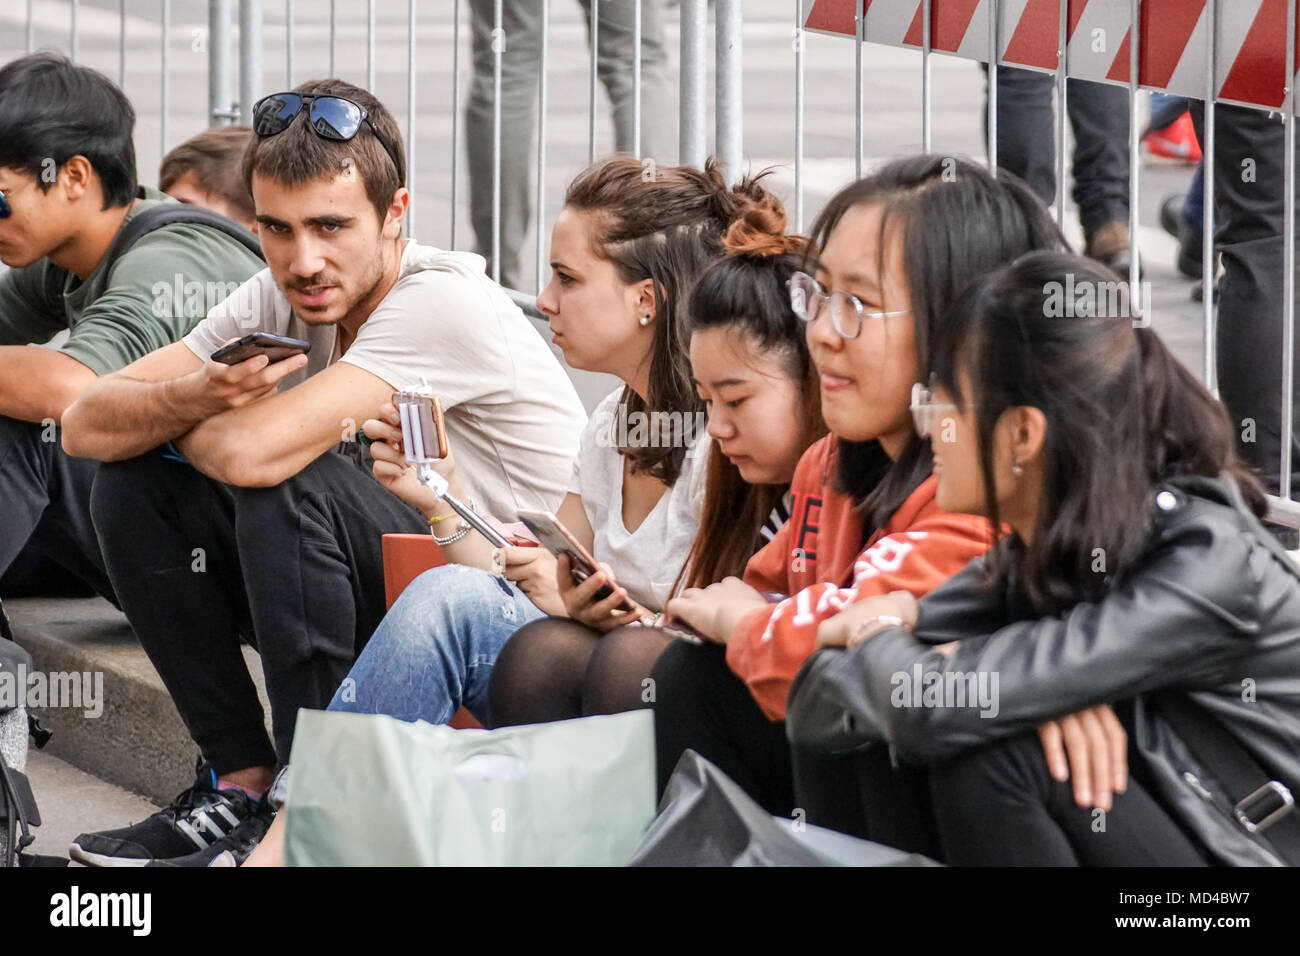 Mailand, Italien, 04. März 2018: Jugendliche in der Stadt Sitzen Platz mit ihrem Smartphone zu kommunizieren. Stockfoto